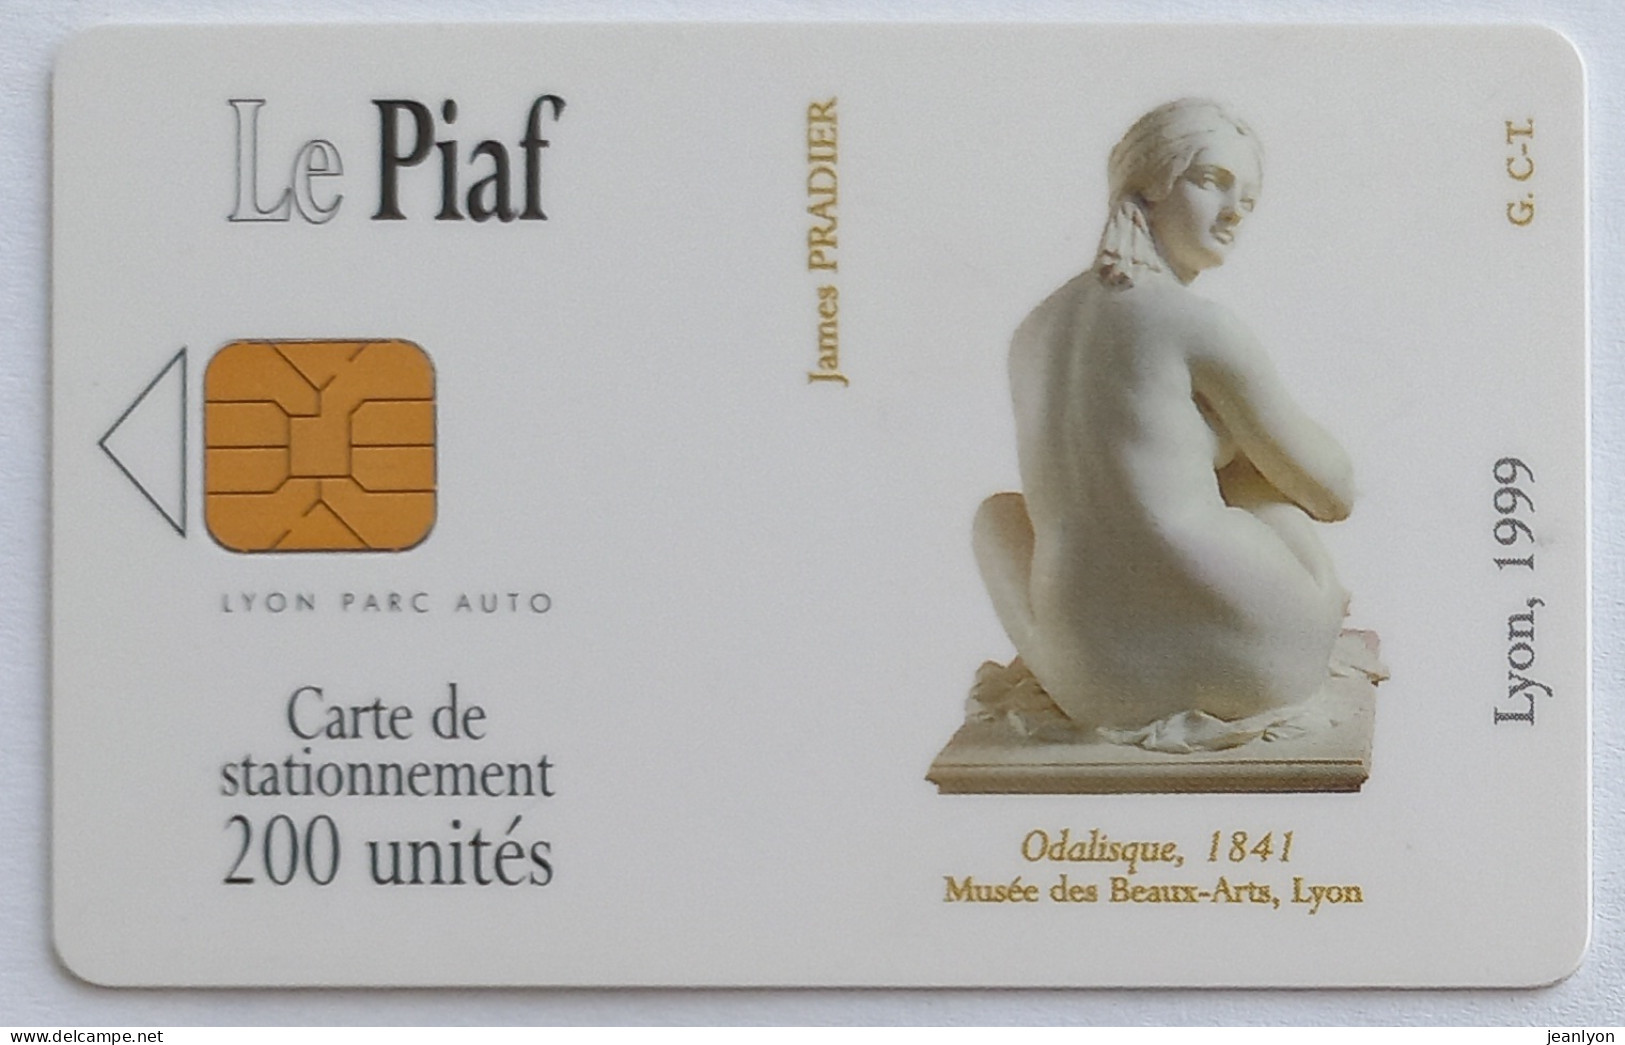 PIAF LYON - Carte Stationnement 1999 - ODALISQUE - Art / Statue - Musée Des Beaux Arts Lyon - PIAF Parking Cards